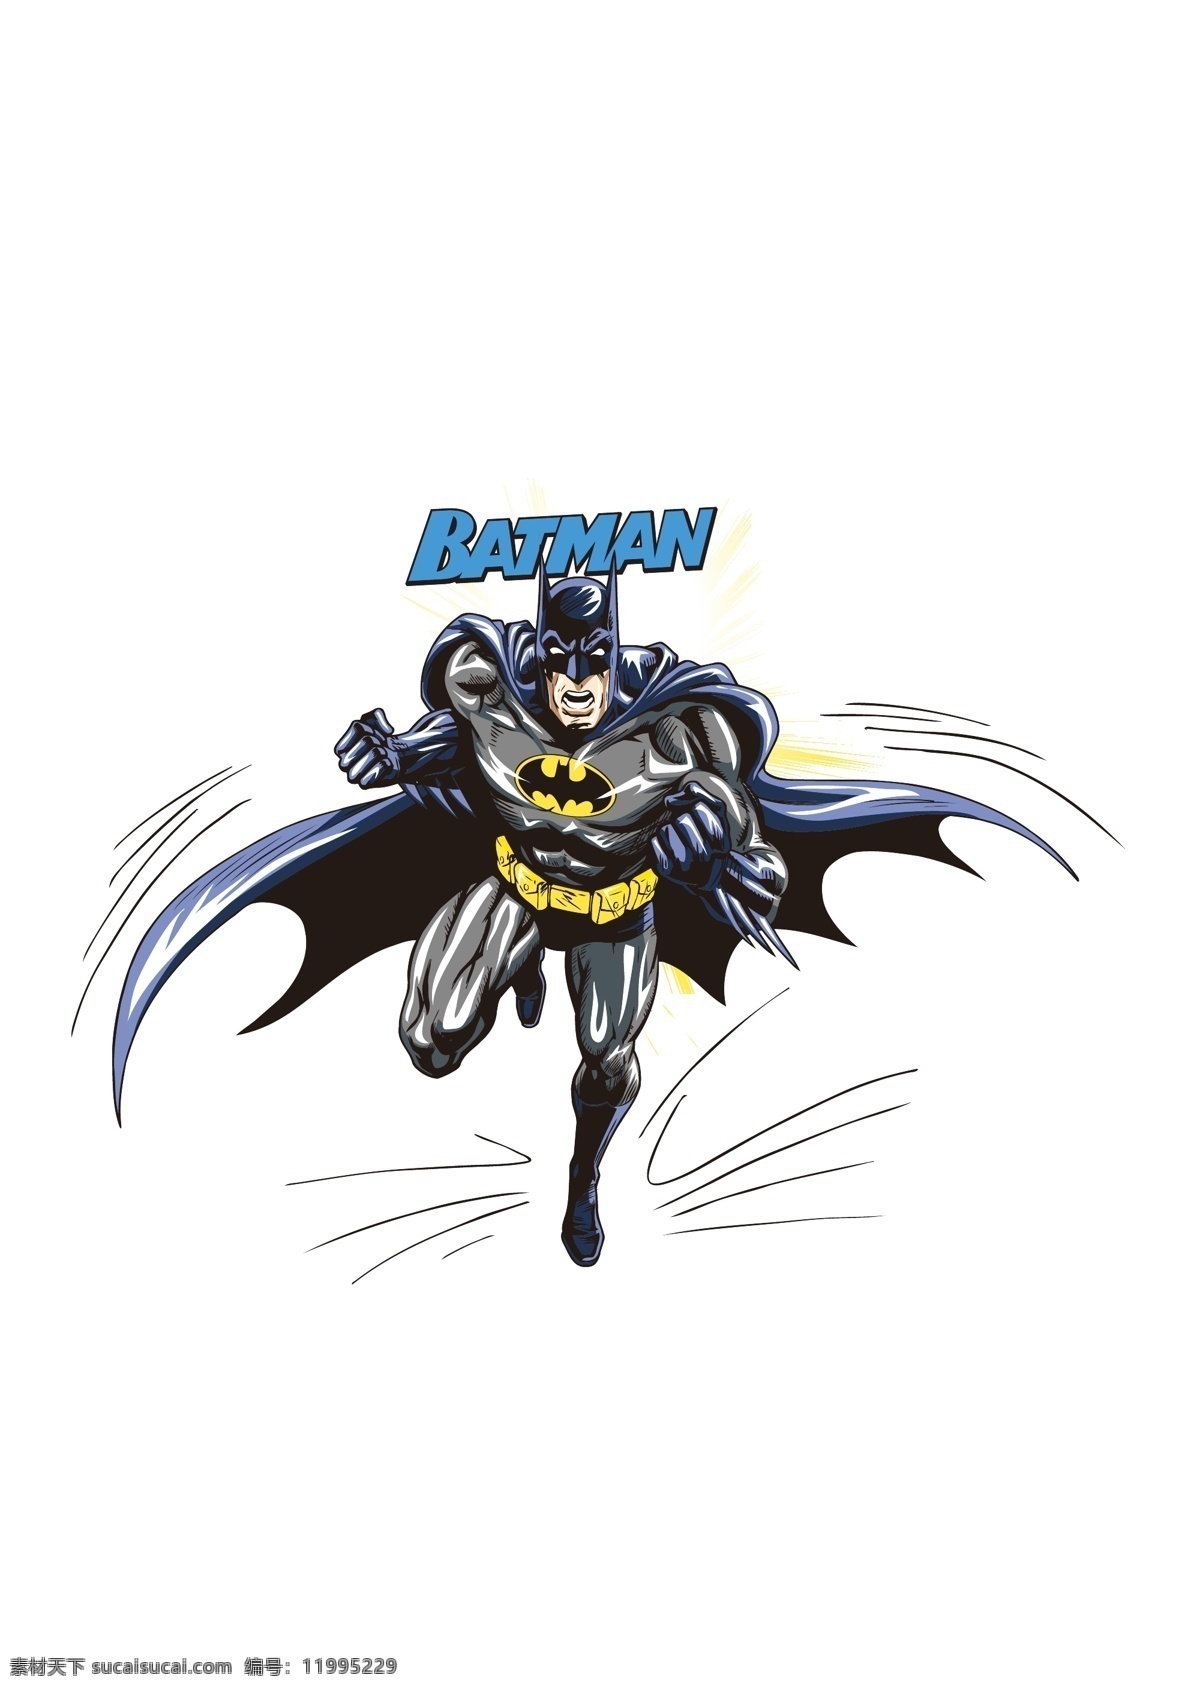 蝙蝠侠 batman 漫威人物 矢量 完整 动漫动画 动漫人物